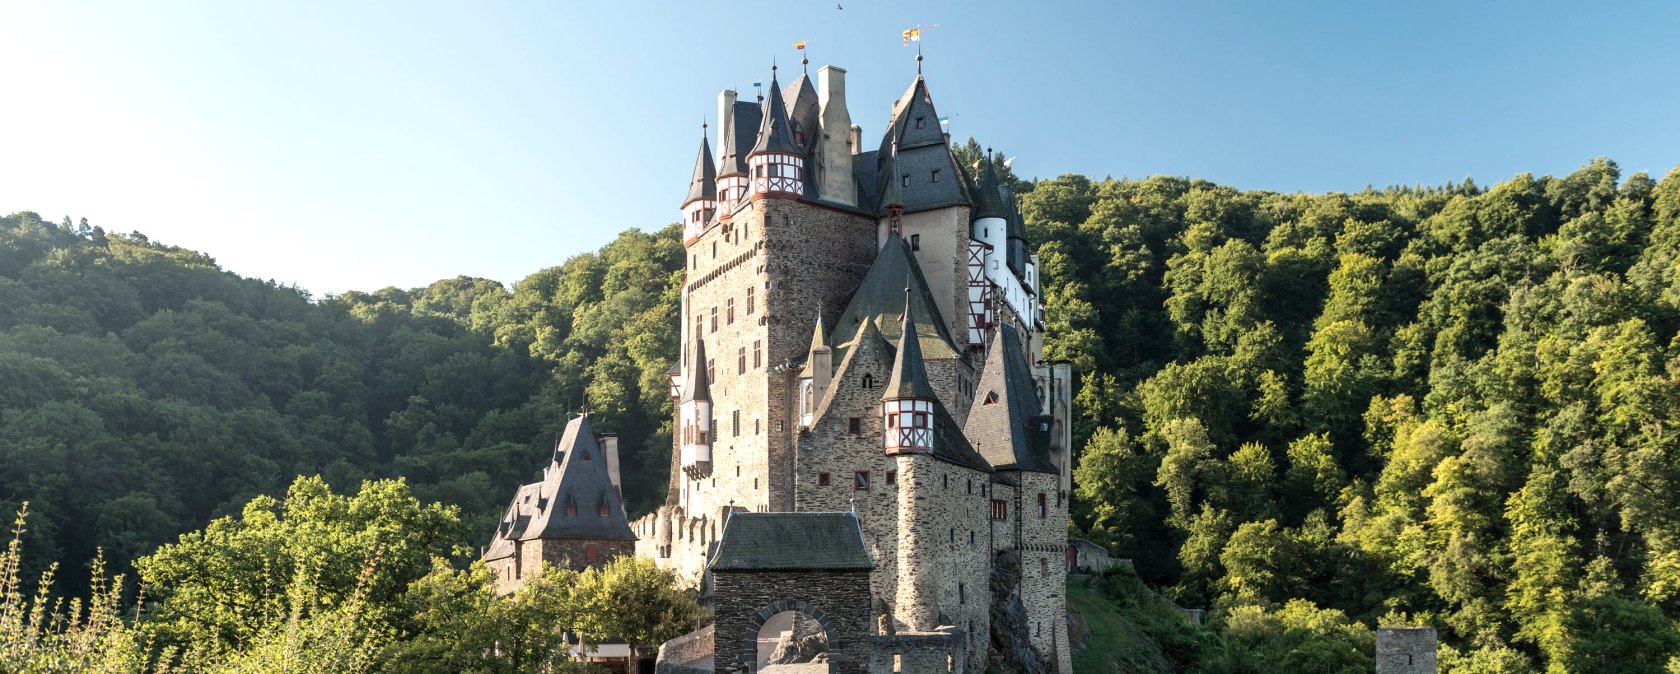 Weg zur Burg Eltz, © Rheinland-Pfalz Tourismus GmbH, Dominik Ketz